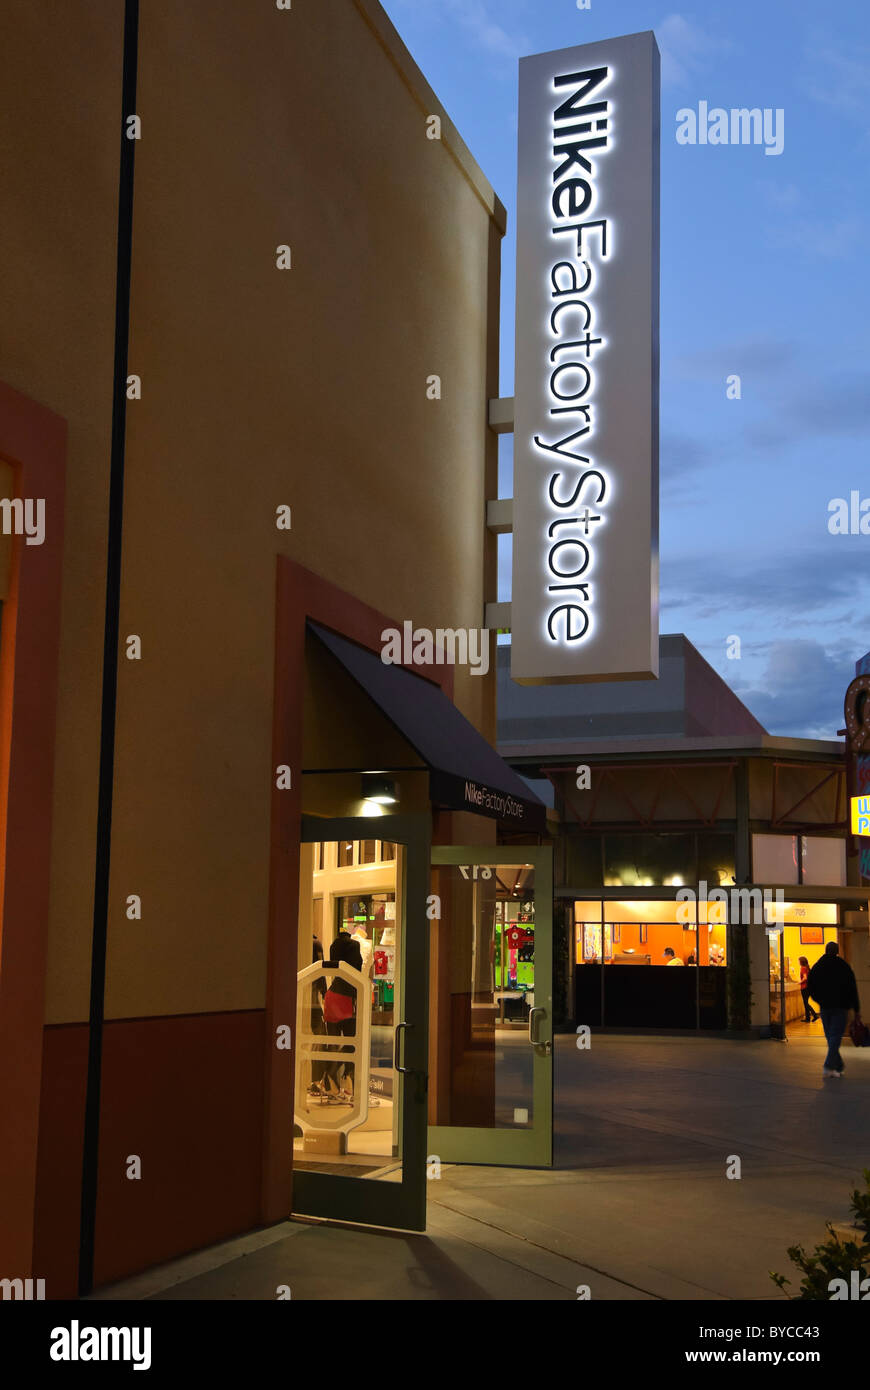 Shopping nike e imágenes de alta resolución - Alamy